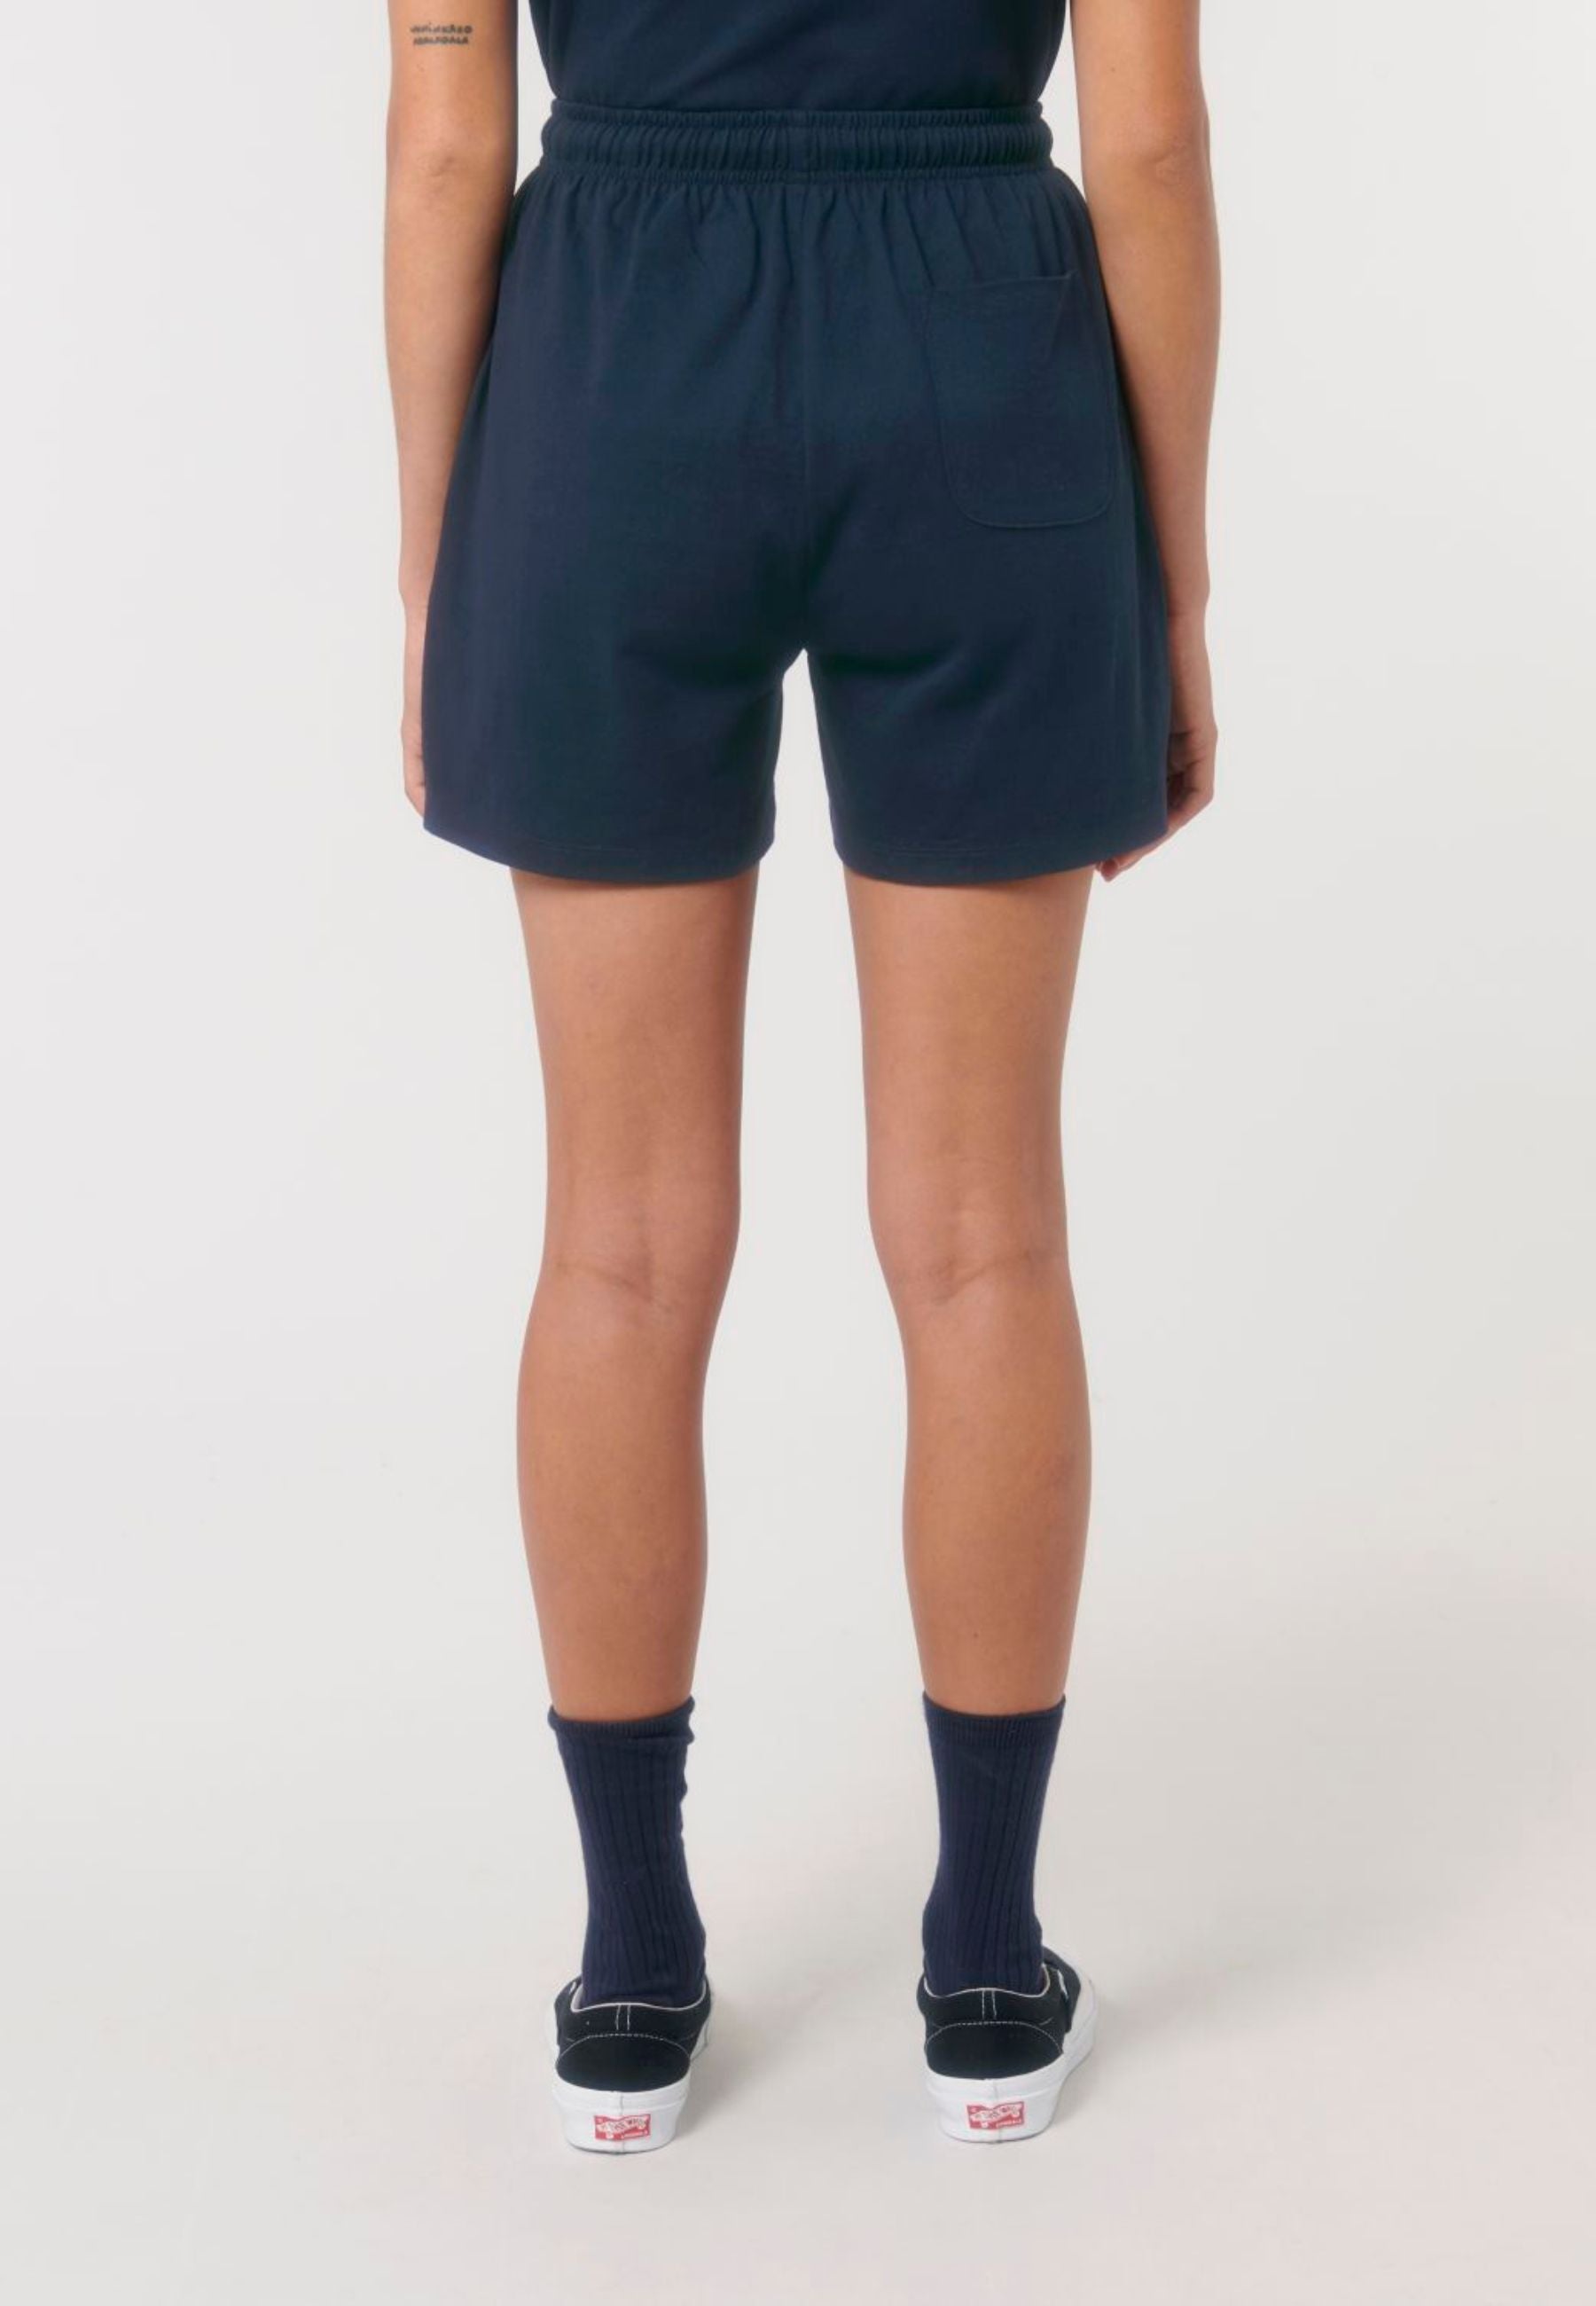 WAKER | Nachhaltige Unisex Shorts aus 100% Biobaumwolle